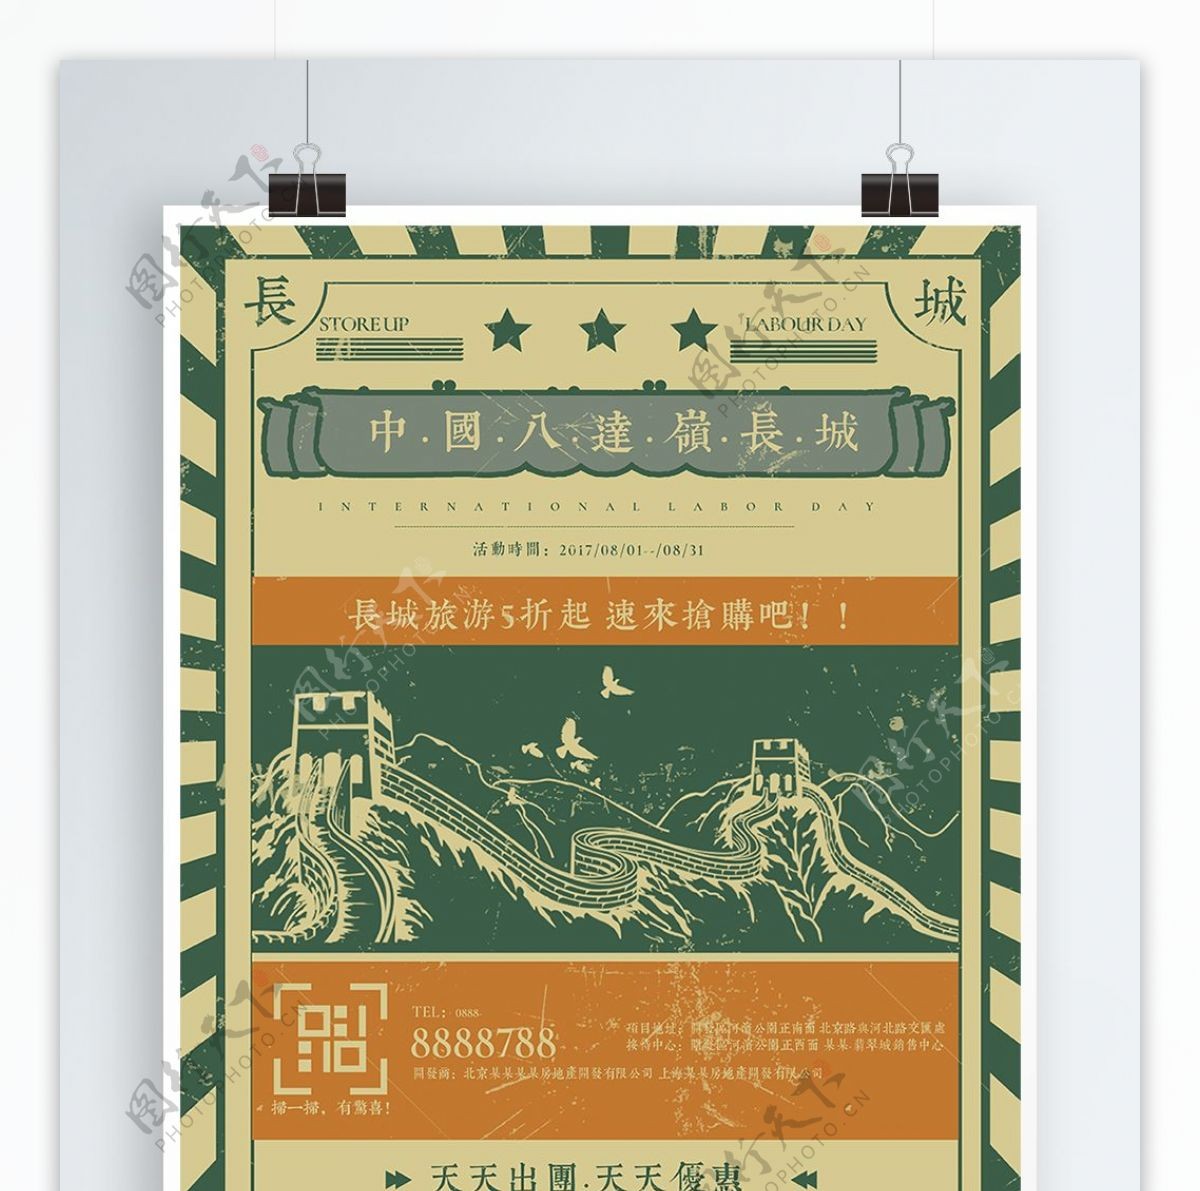 简约复古中国风长城旅游海报设计模板